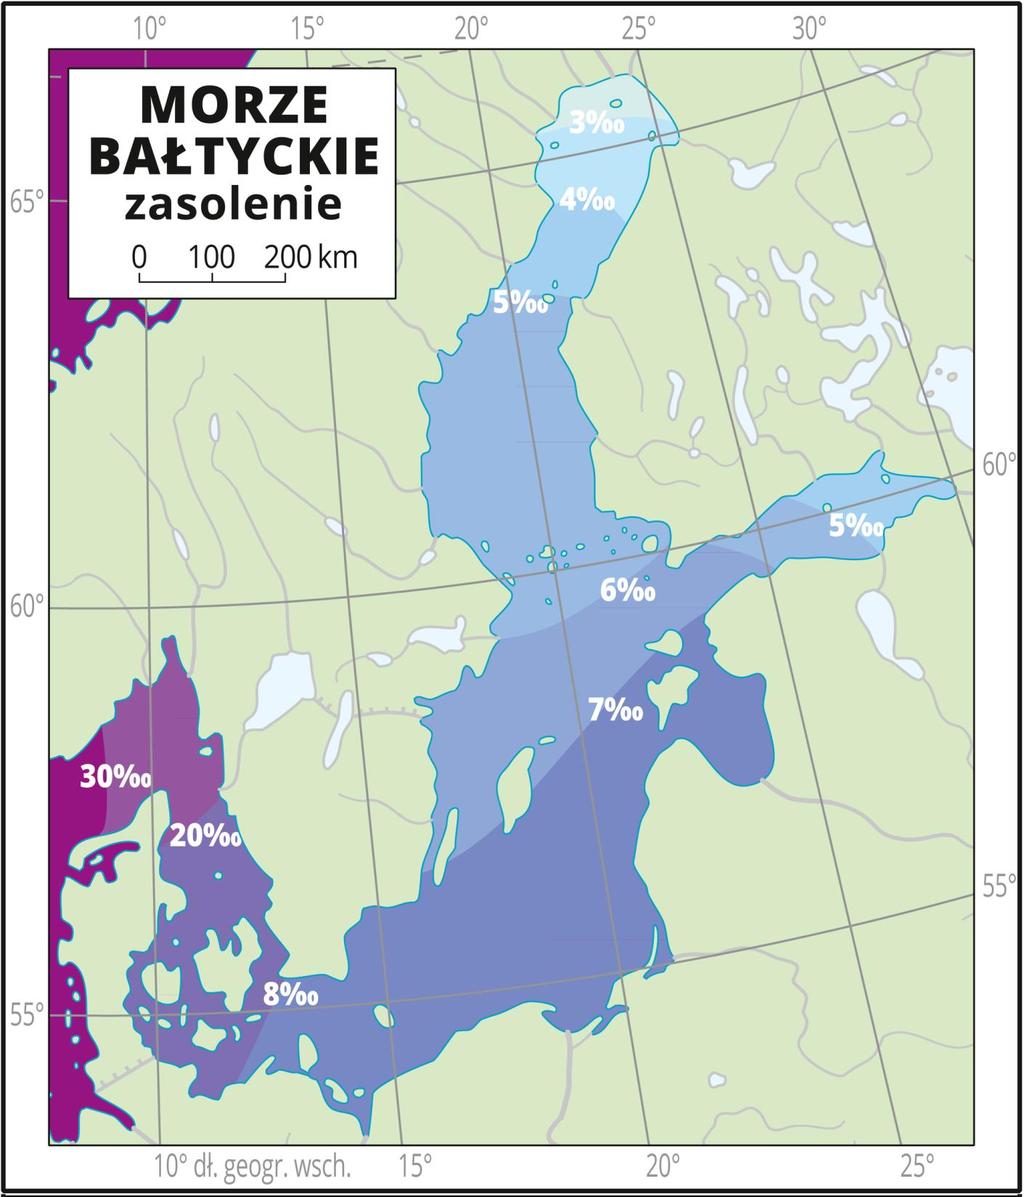 Średnie zasolenie wód Morza Bałtyckiego wynosi ok. 7. Oznacza to, że po odparowaniu 1000 l wody morskiej otrzymuje się 7 l soli.